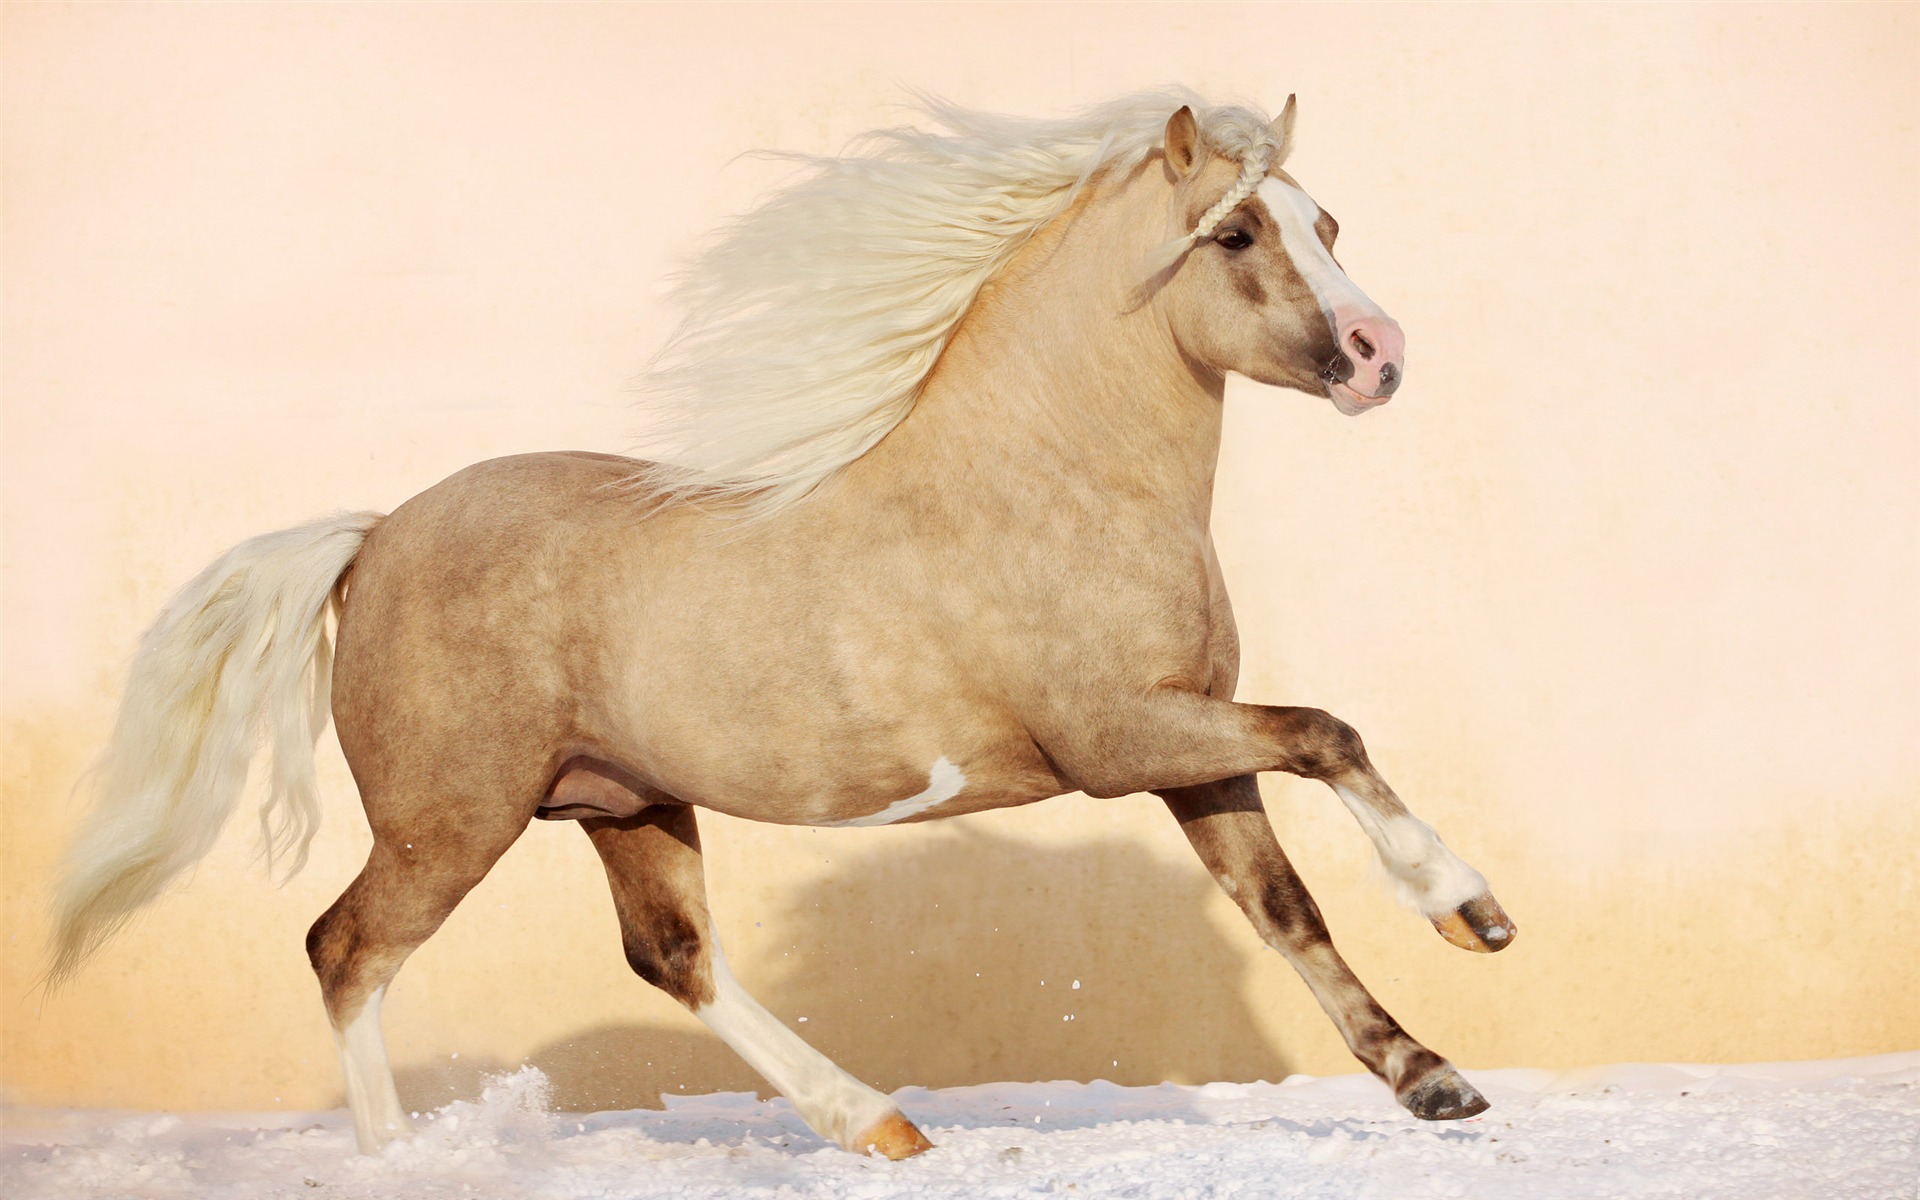 Super horse photo wallpaper (1) #10 - 1920x1200